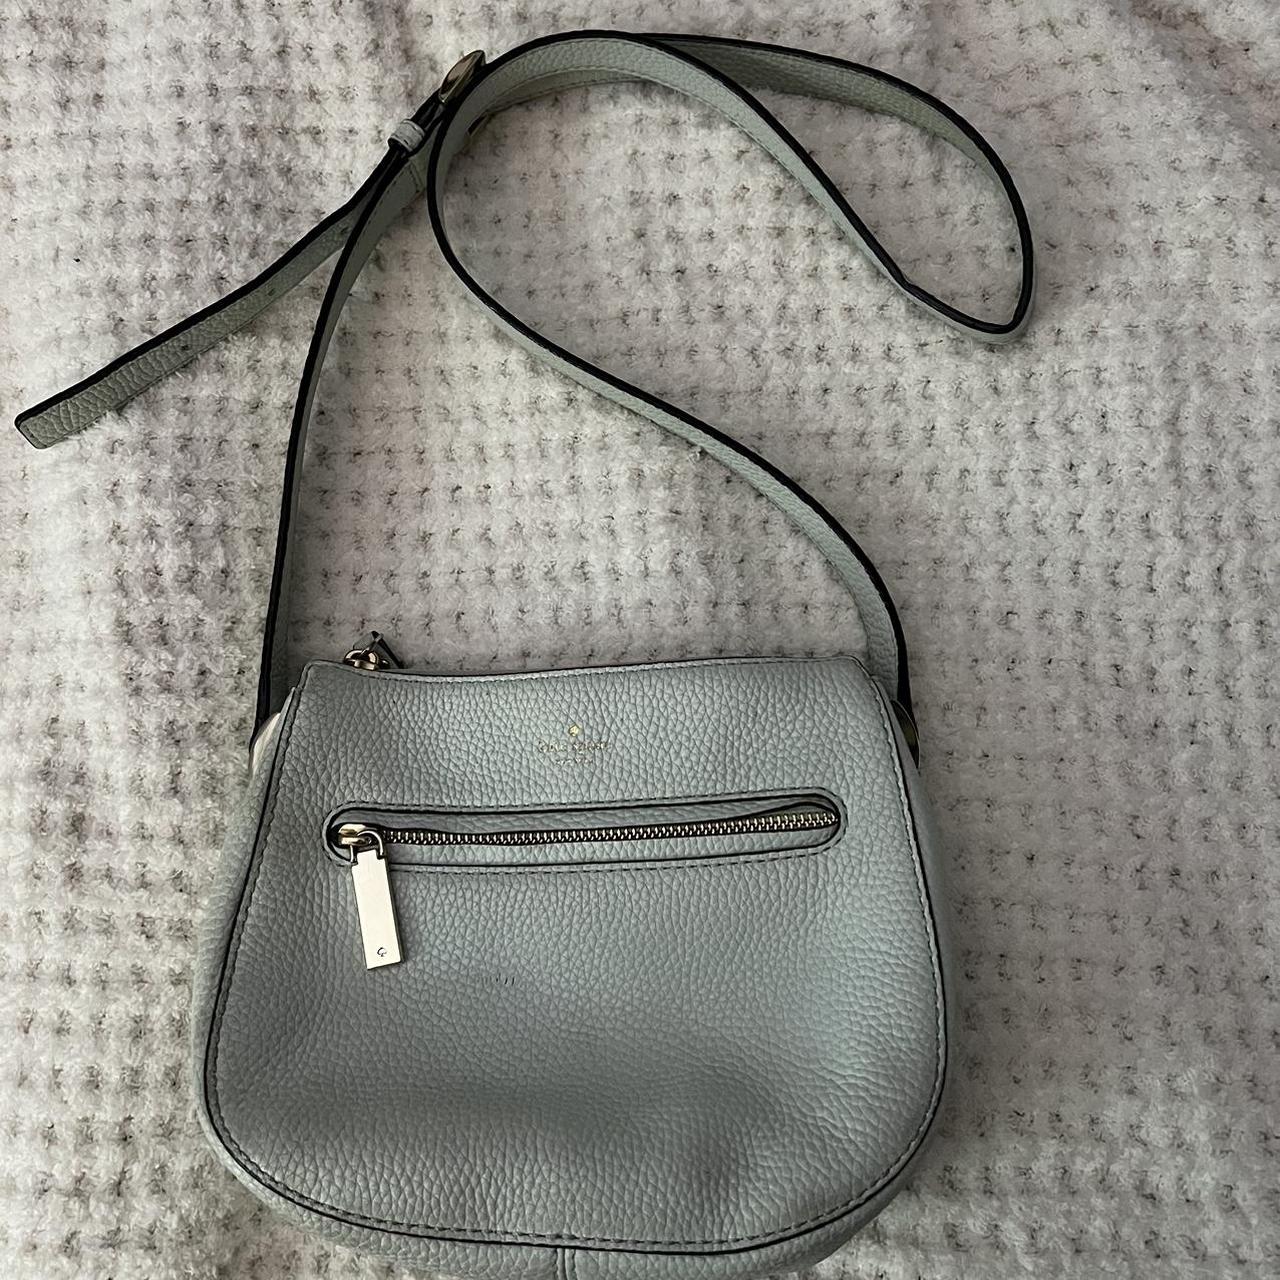 KATE SPADE Black Satchel Shoulder Medium Size PURSE/BAG. EXCELLENT USED  COND | eBay